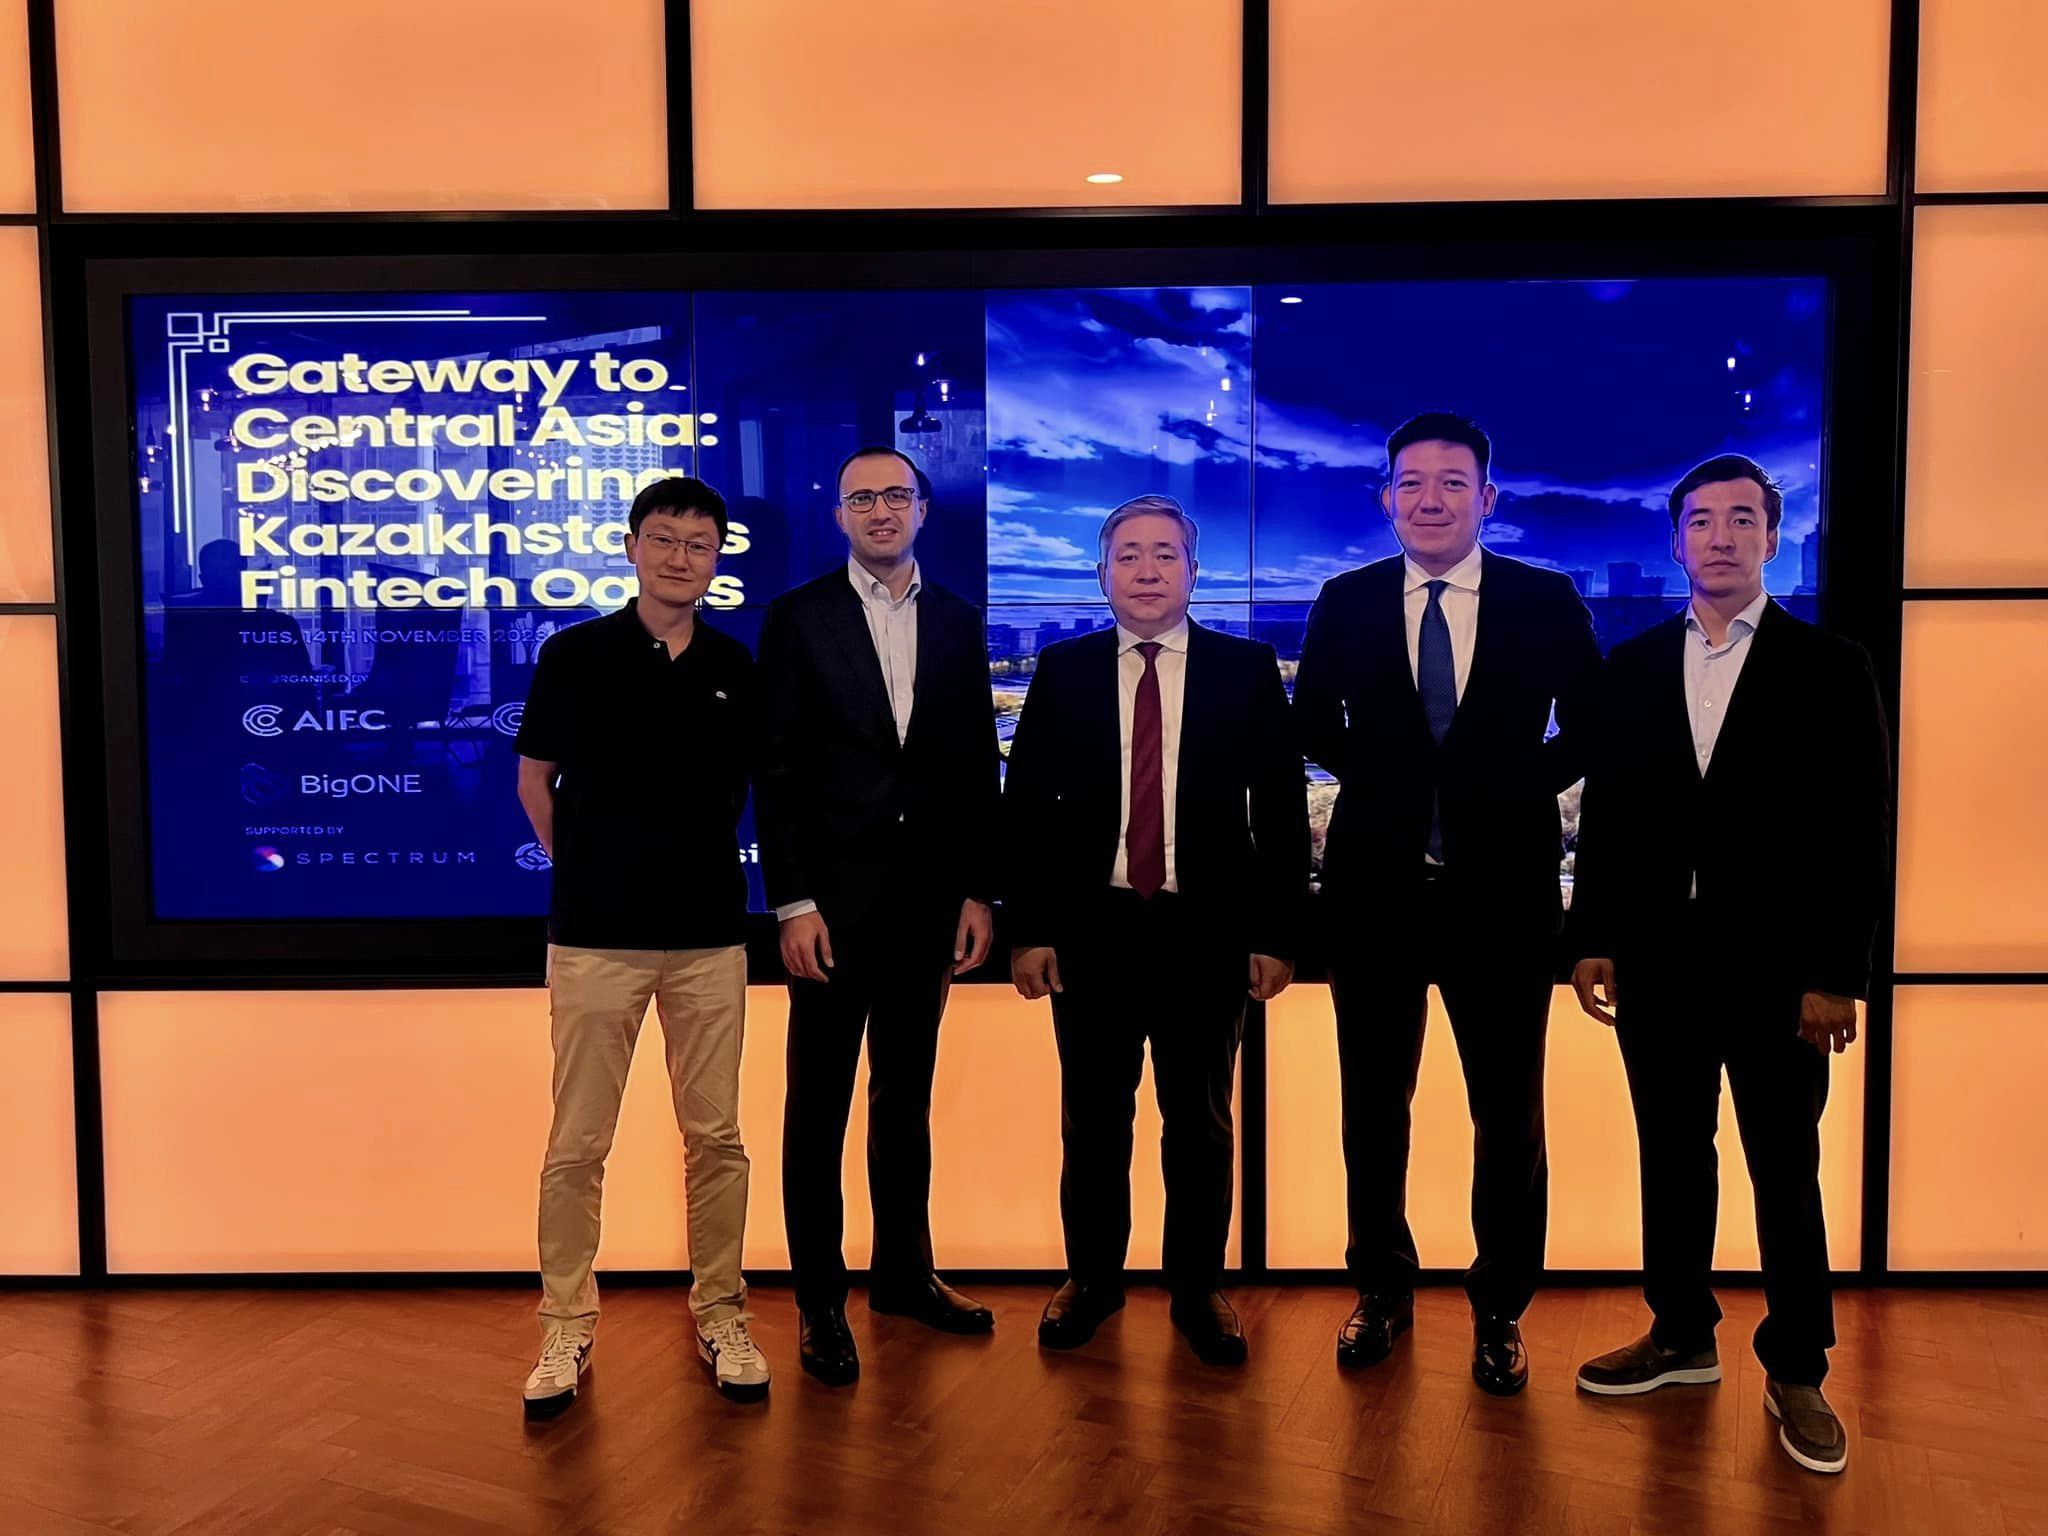 Ворота в Центральную Азию: Открытие казахстанского финтех-оазиса - МФЦА и BigOne возглавляют работу в Сингапуре